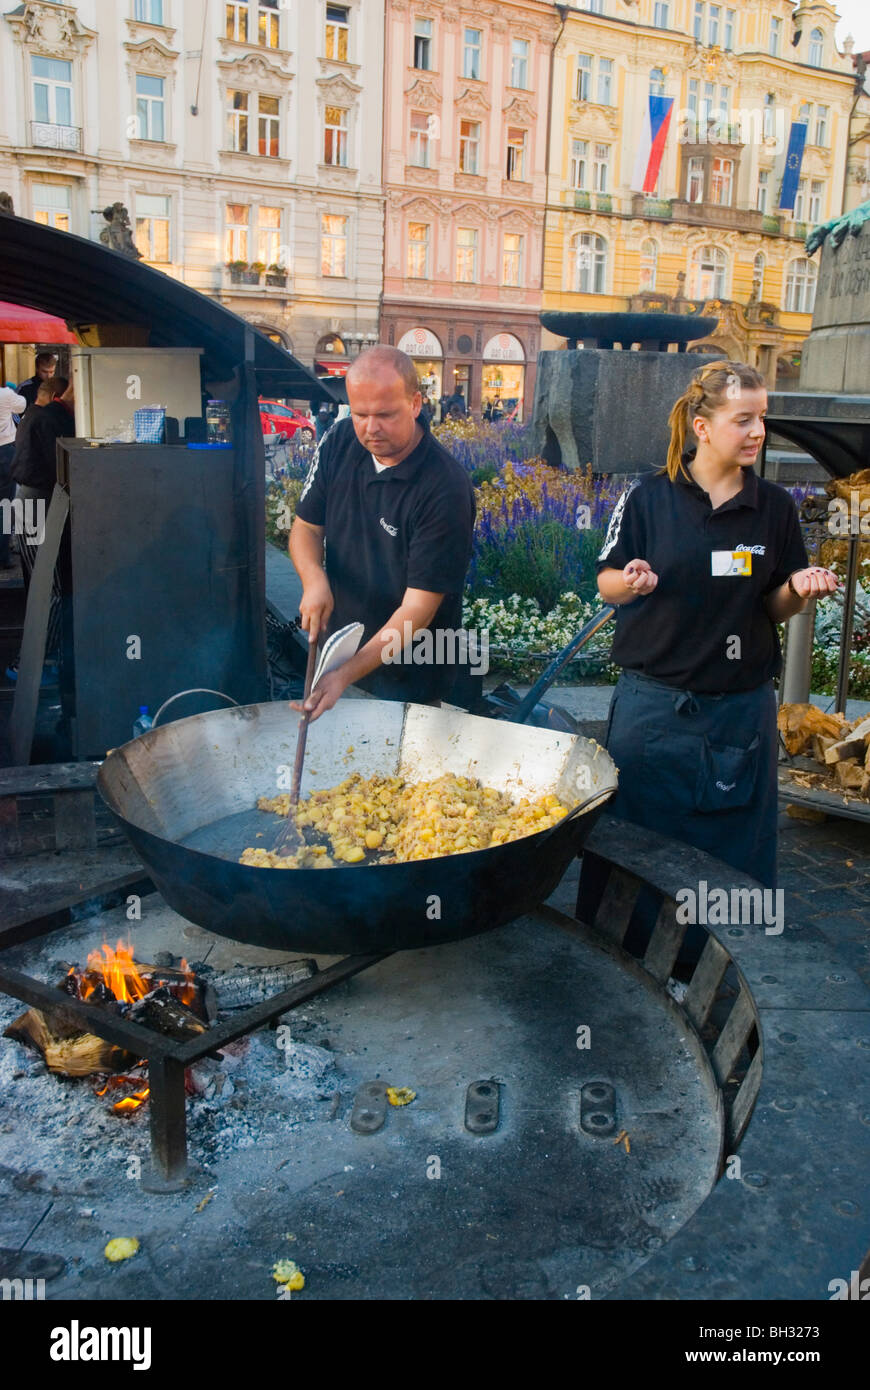 La cuisson dans un wok casserole géant à la place de la vieille ville de Prague République Tchèque Europe Banque D'Images